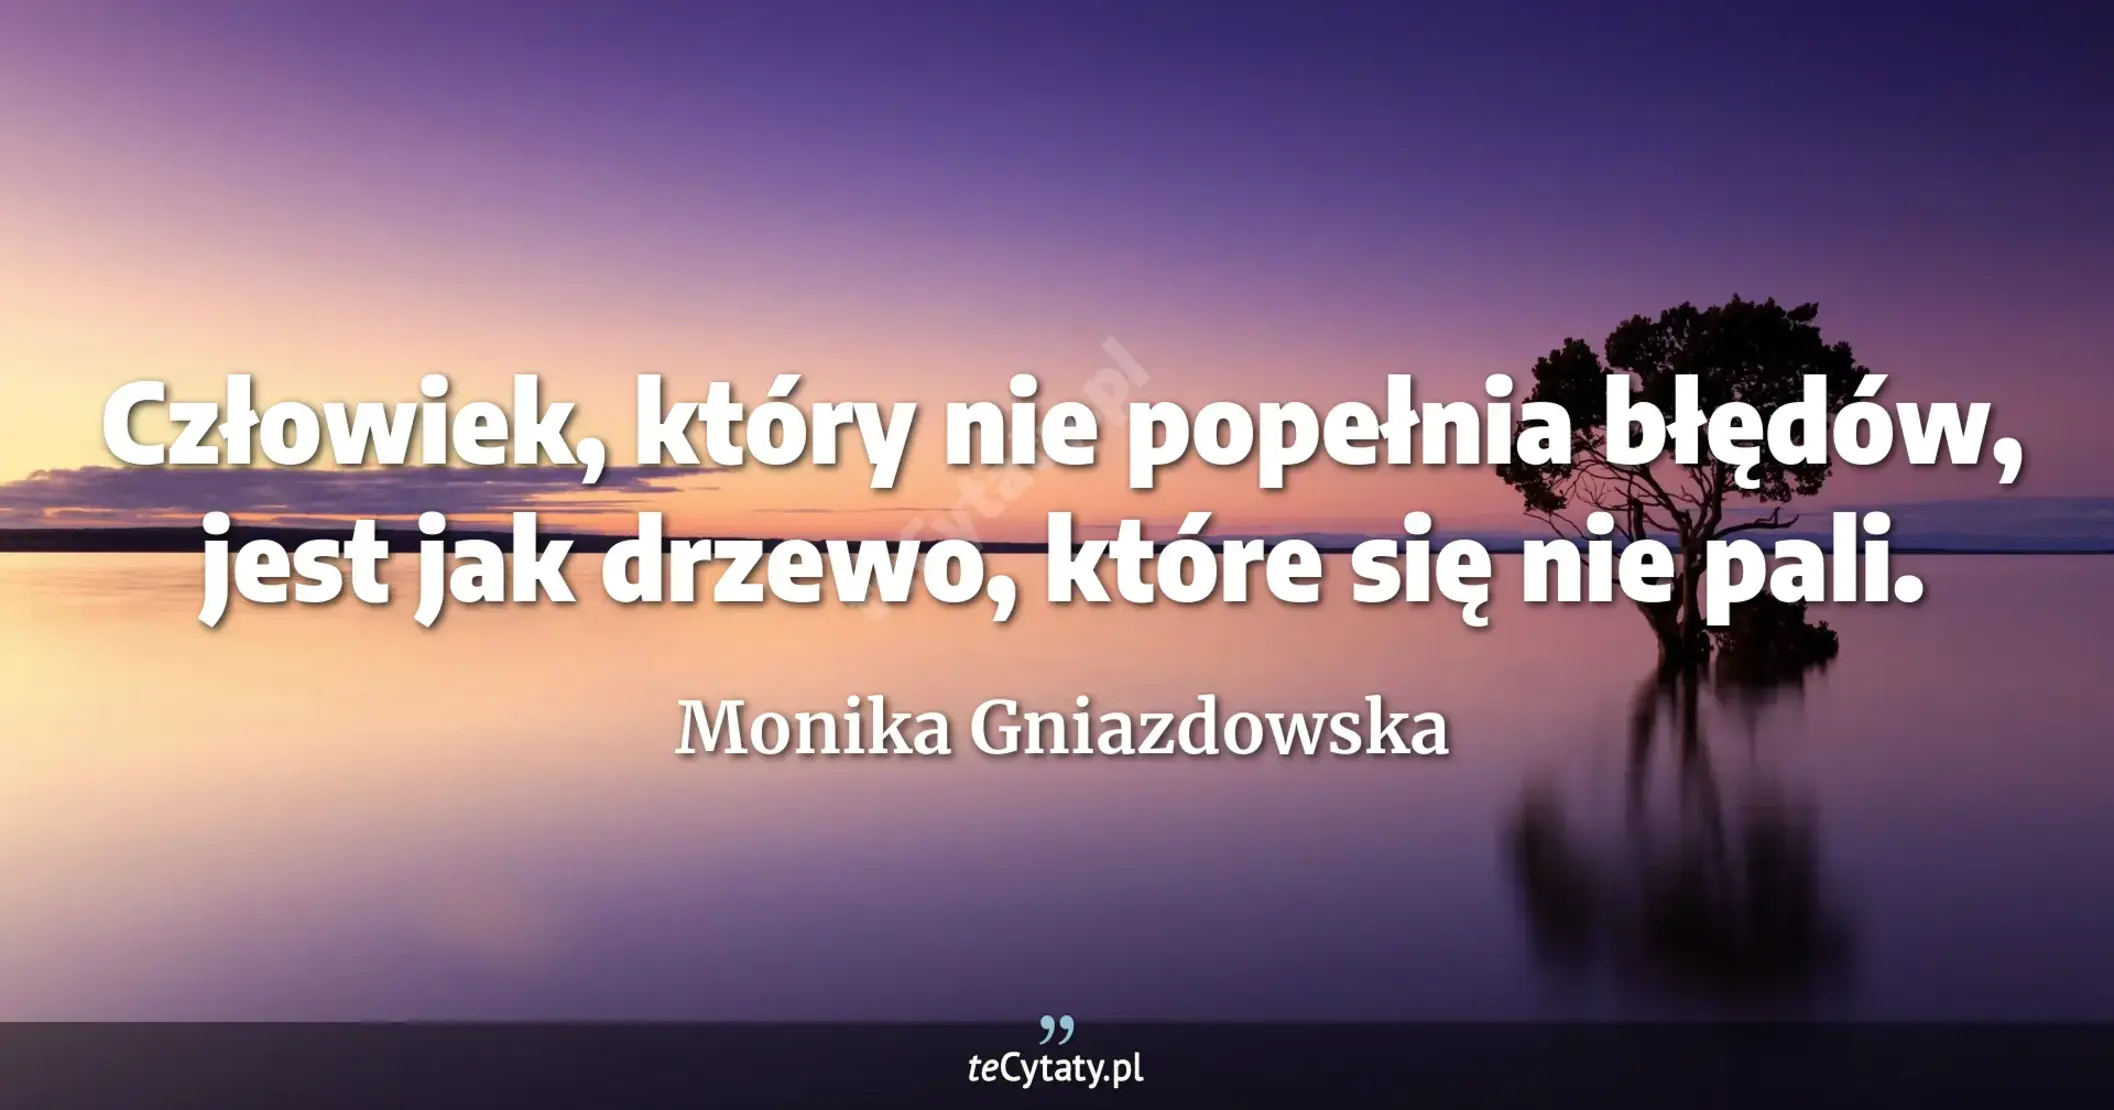 Człowiek, który nie popełnia błędów, jest jak drzewo, które się nie pali. - Monika Gniazdowska